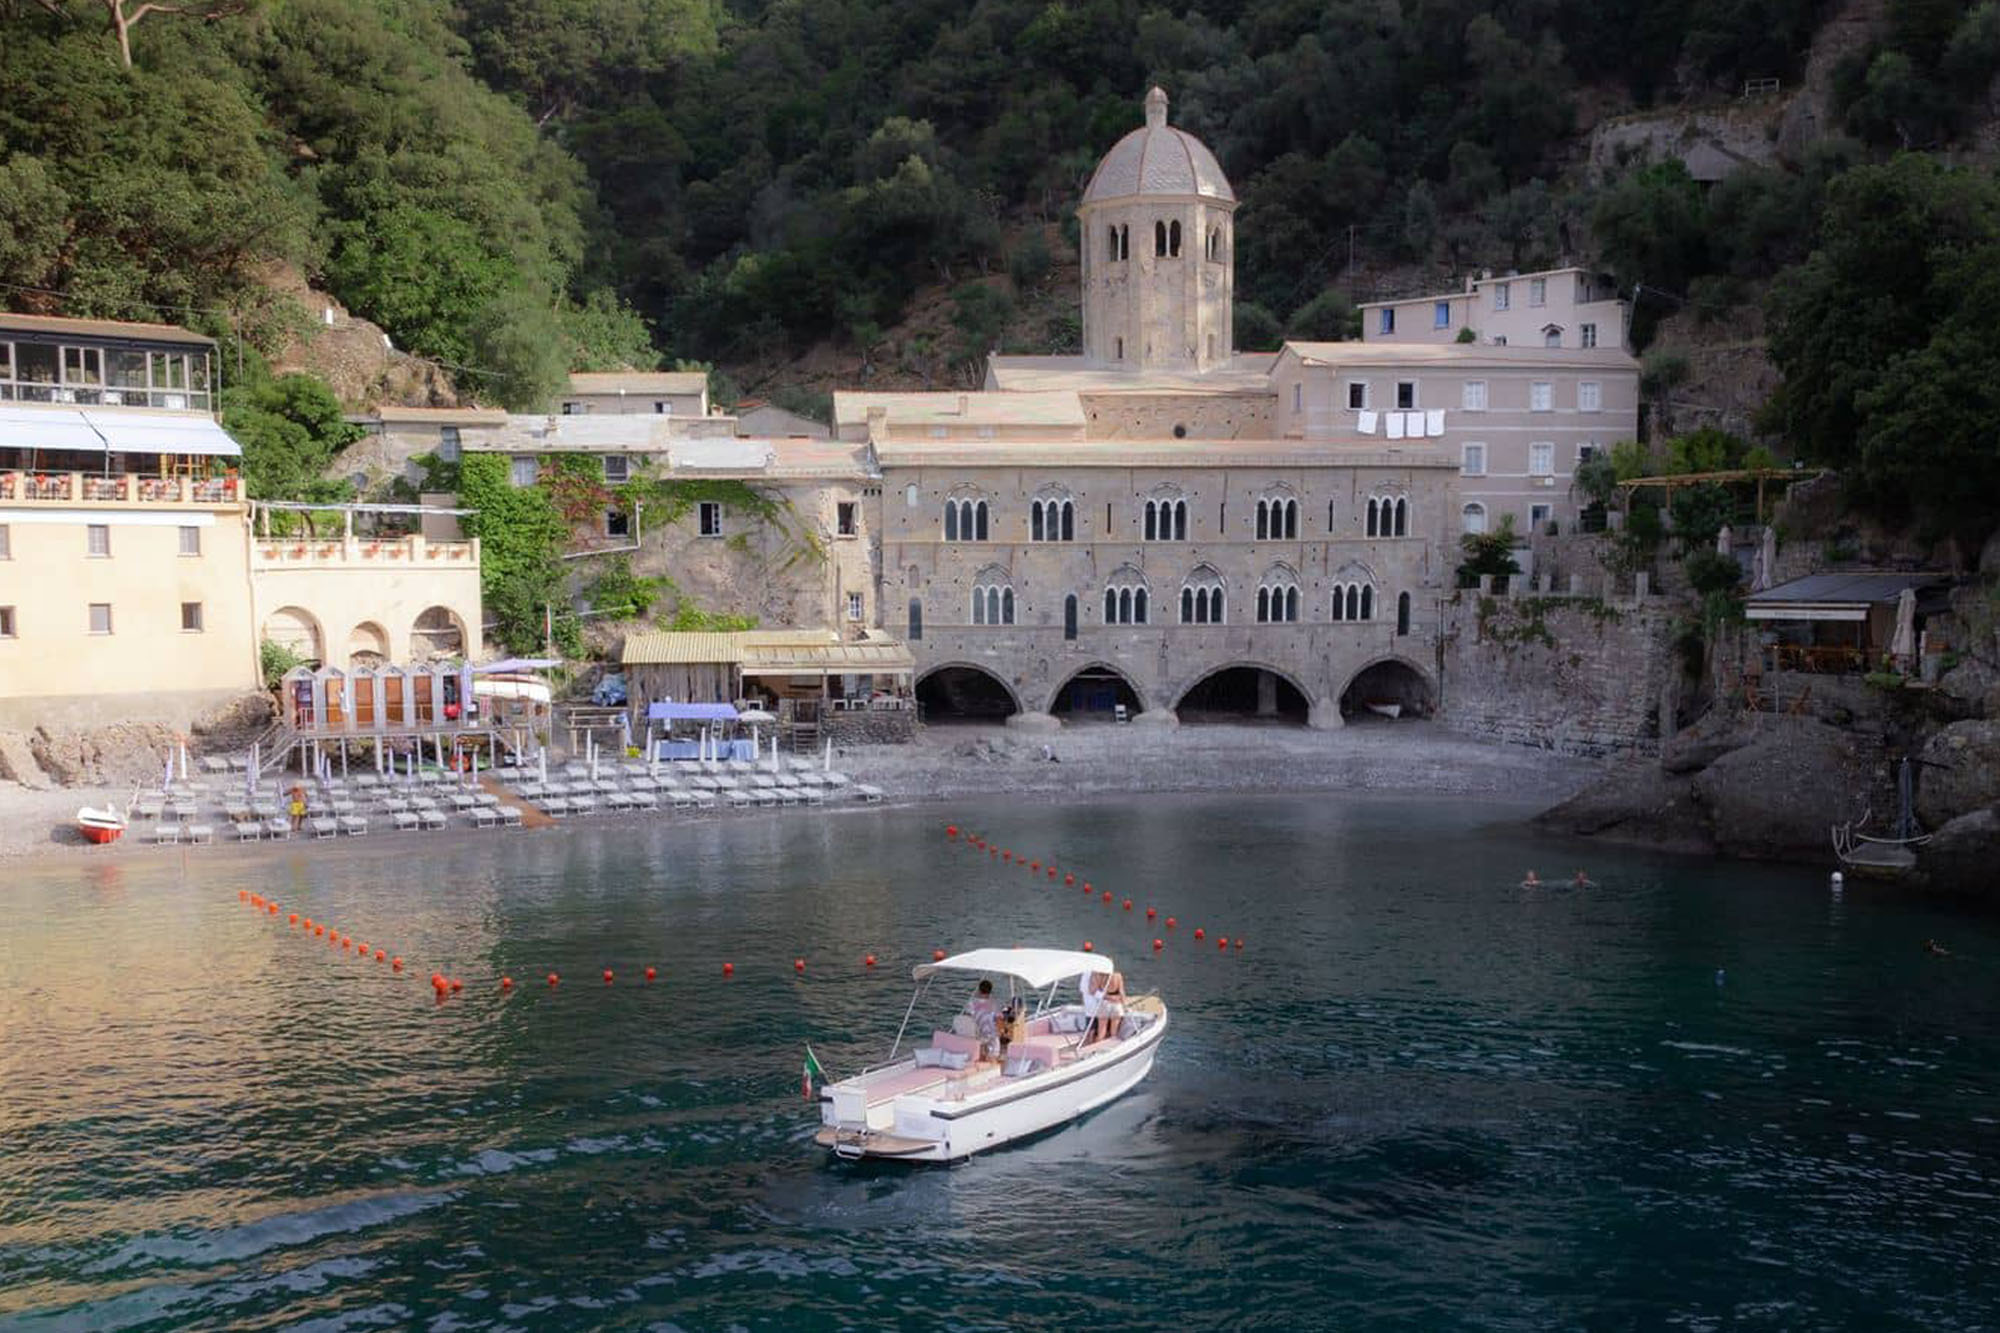 Cesare Charter Portofino - imbarcazione per tour, charter e transfer marittimi